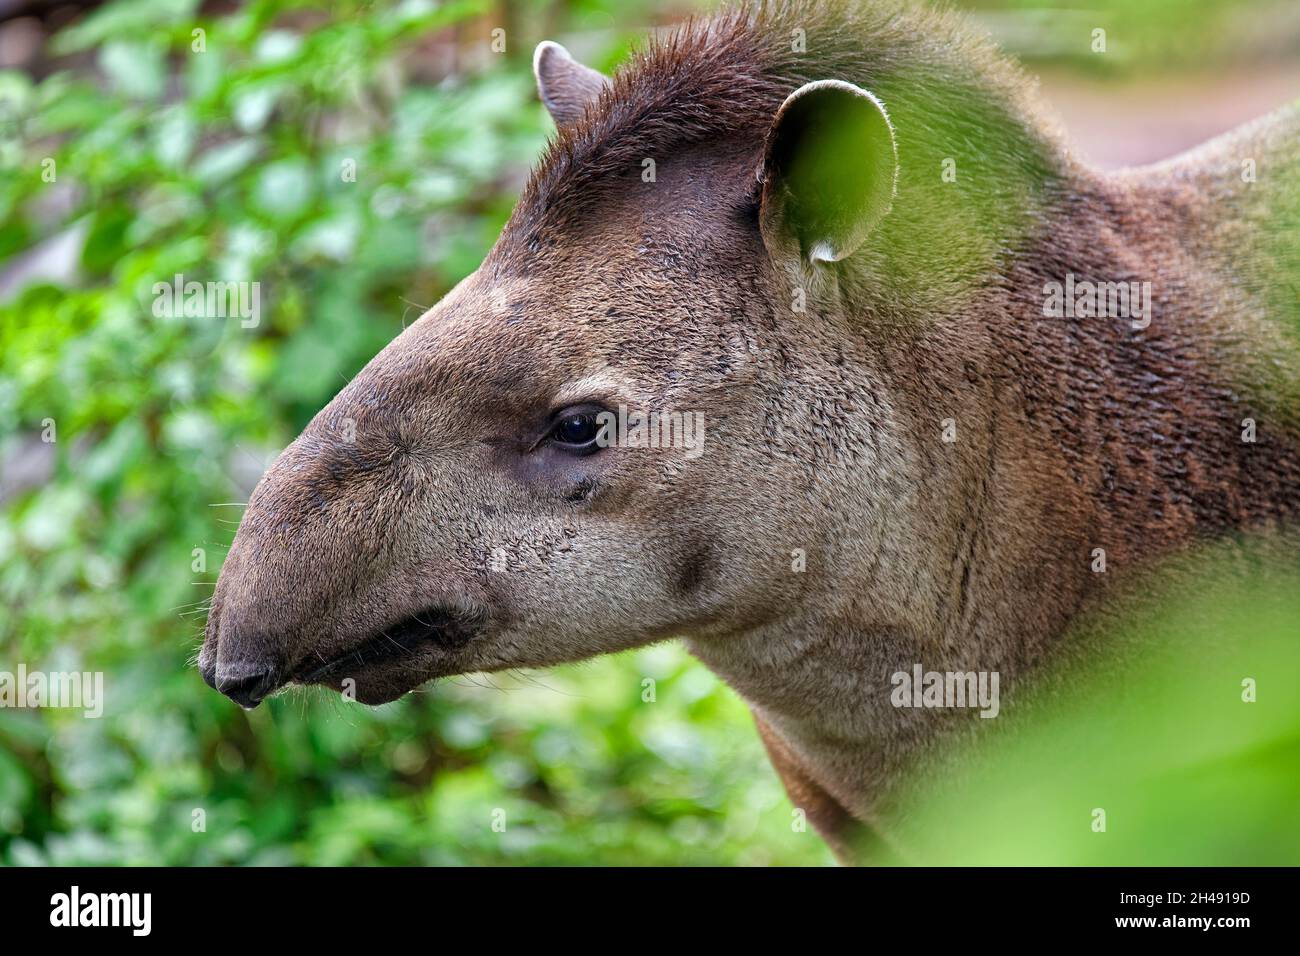 South American tapir - Tapirus terrestris Stock Photo